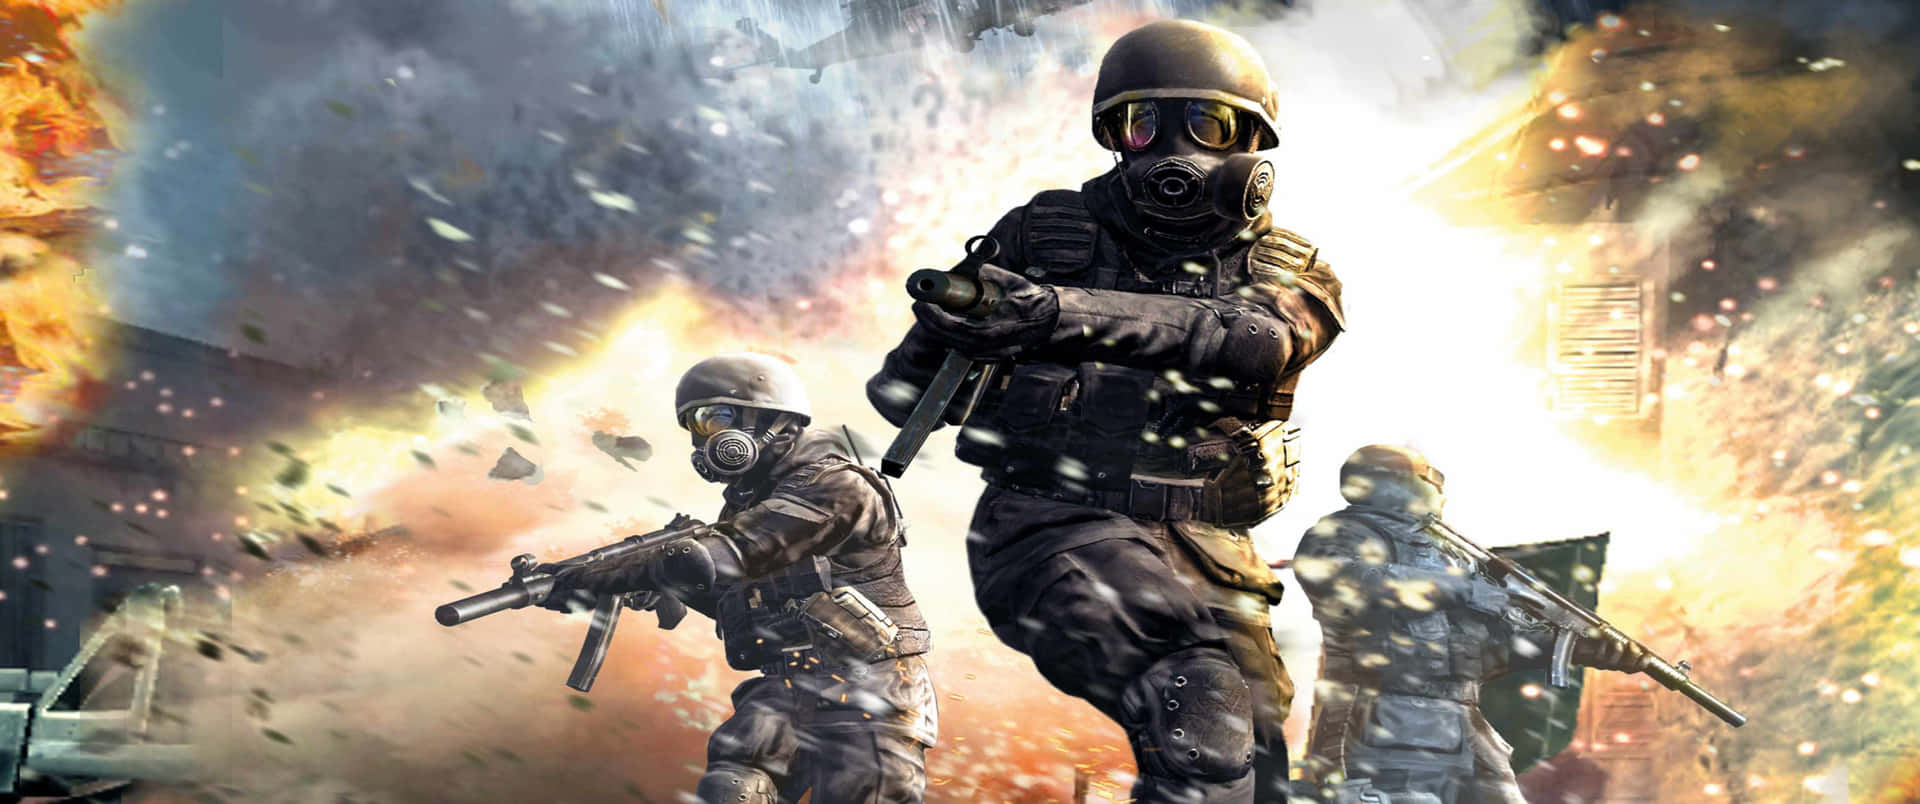 Esplosionegrande 3440x1440p Sfondo Di Call Of Duty Modern Warfare